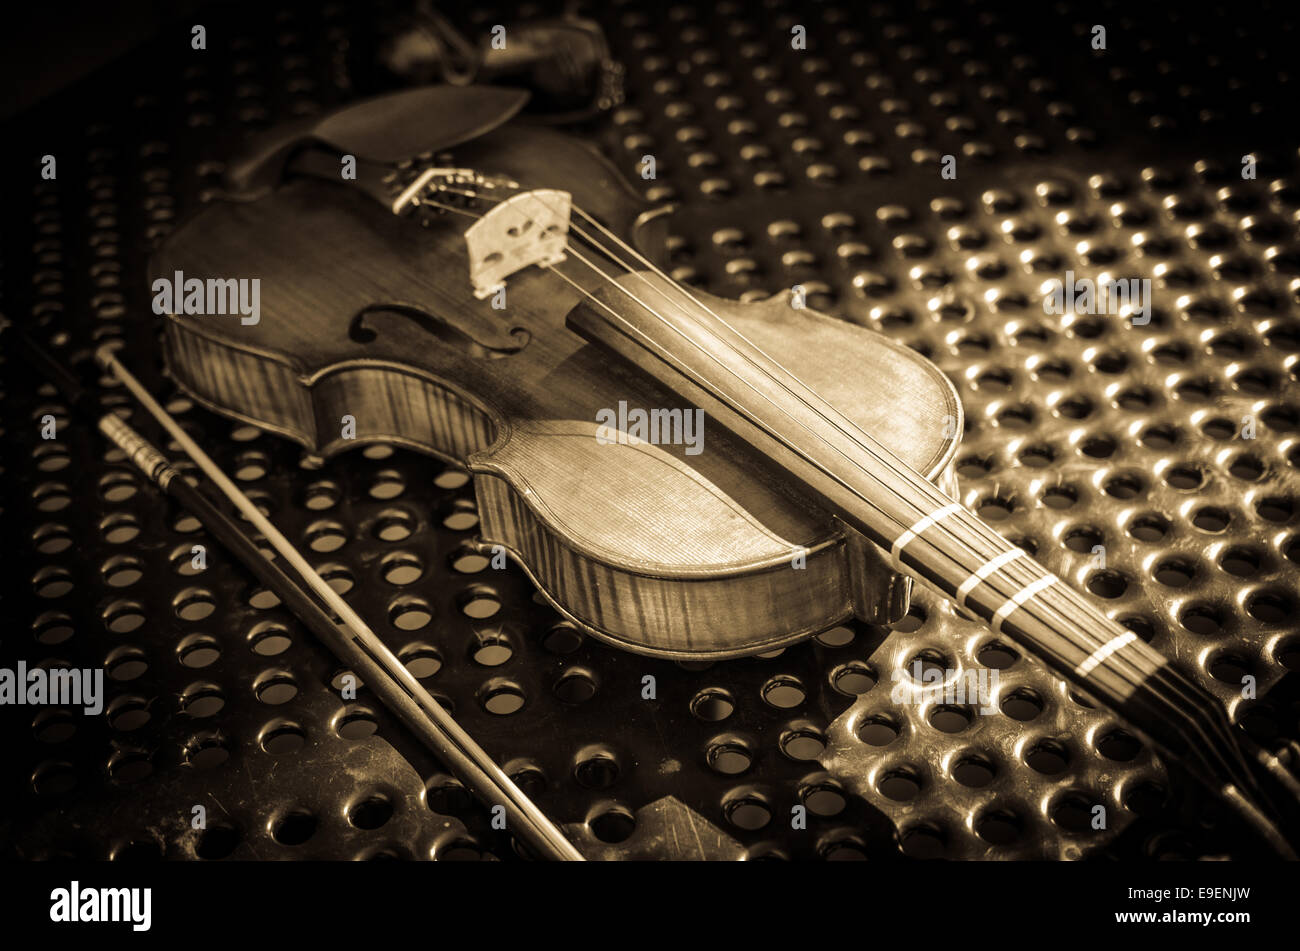 A violin fiddle. Stock Photo